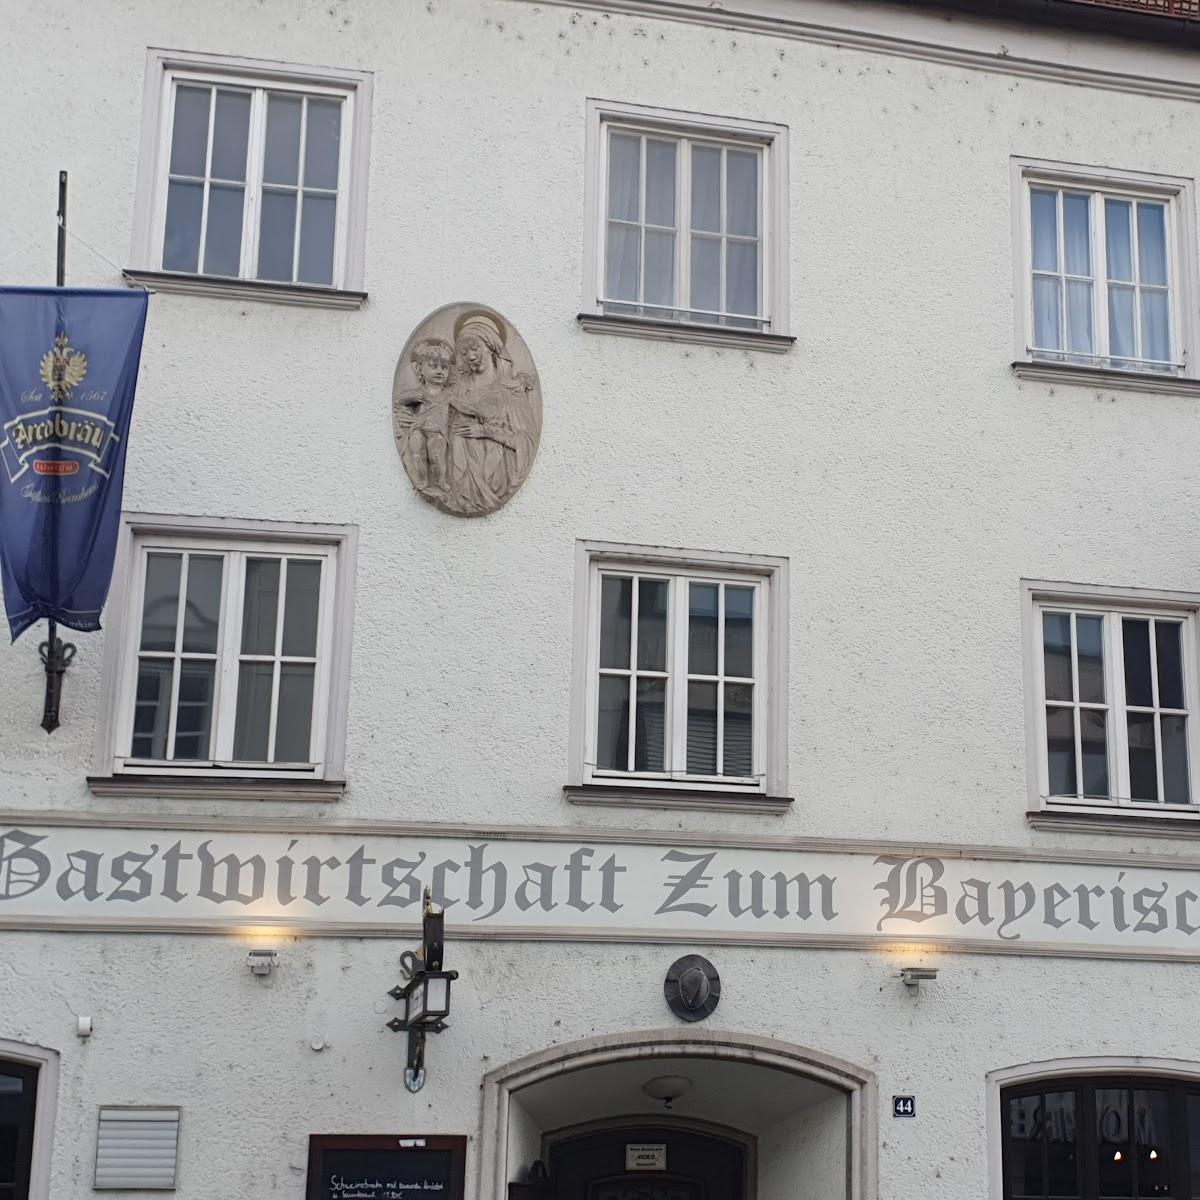 Restaurant "ehemalige Gaststätte zum schwarzen Adler in der Simon Hoeller Passage" in Straubing